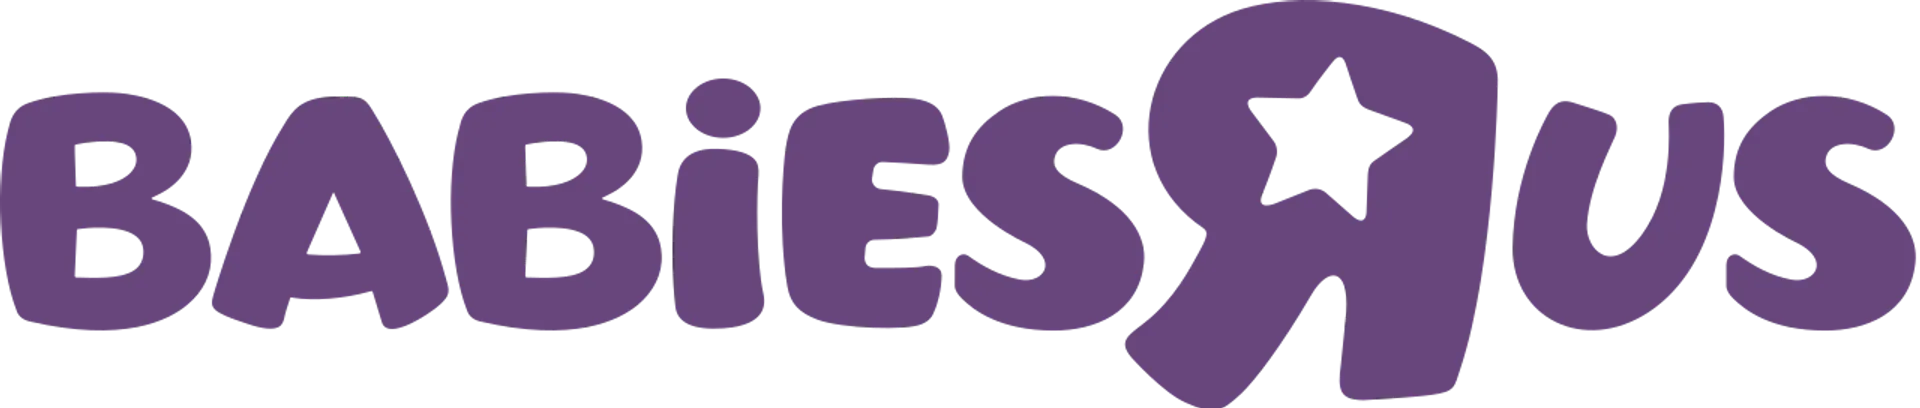 BABIES 'R' US logo de circulaire